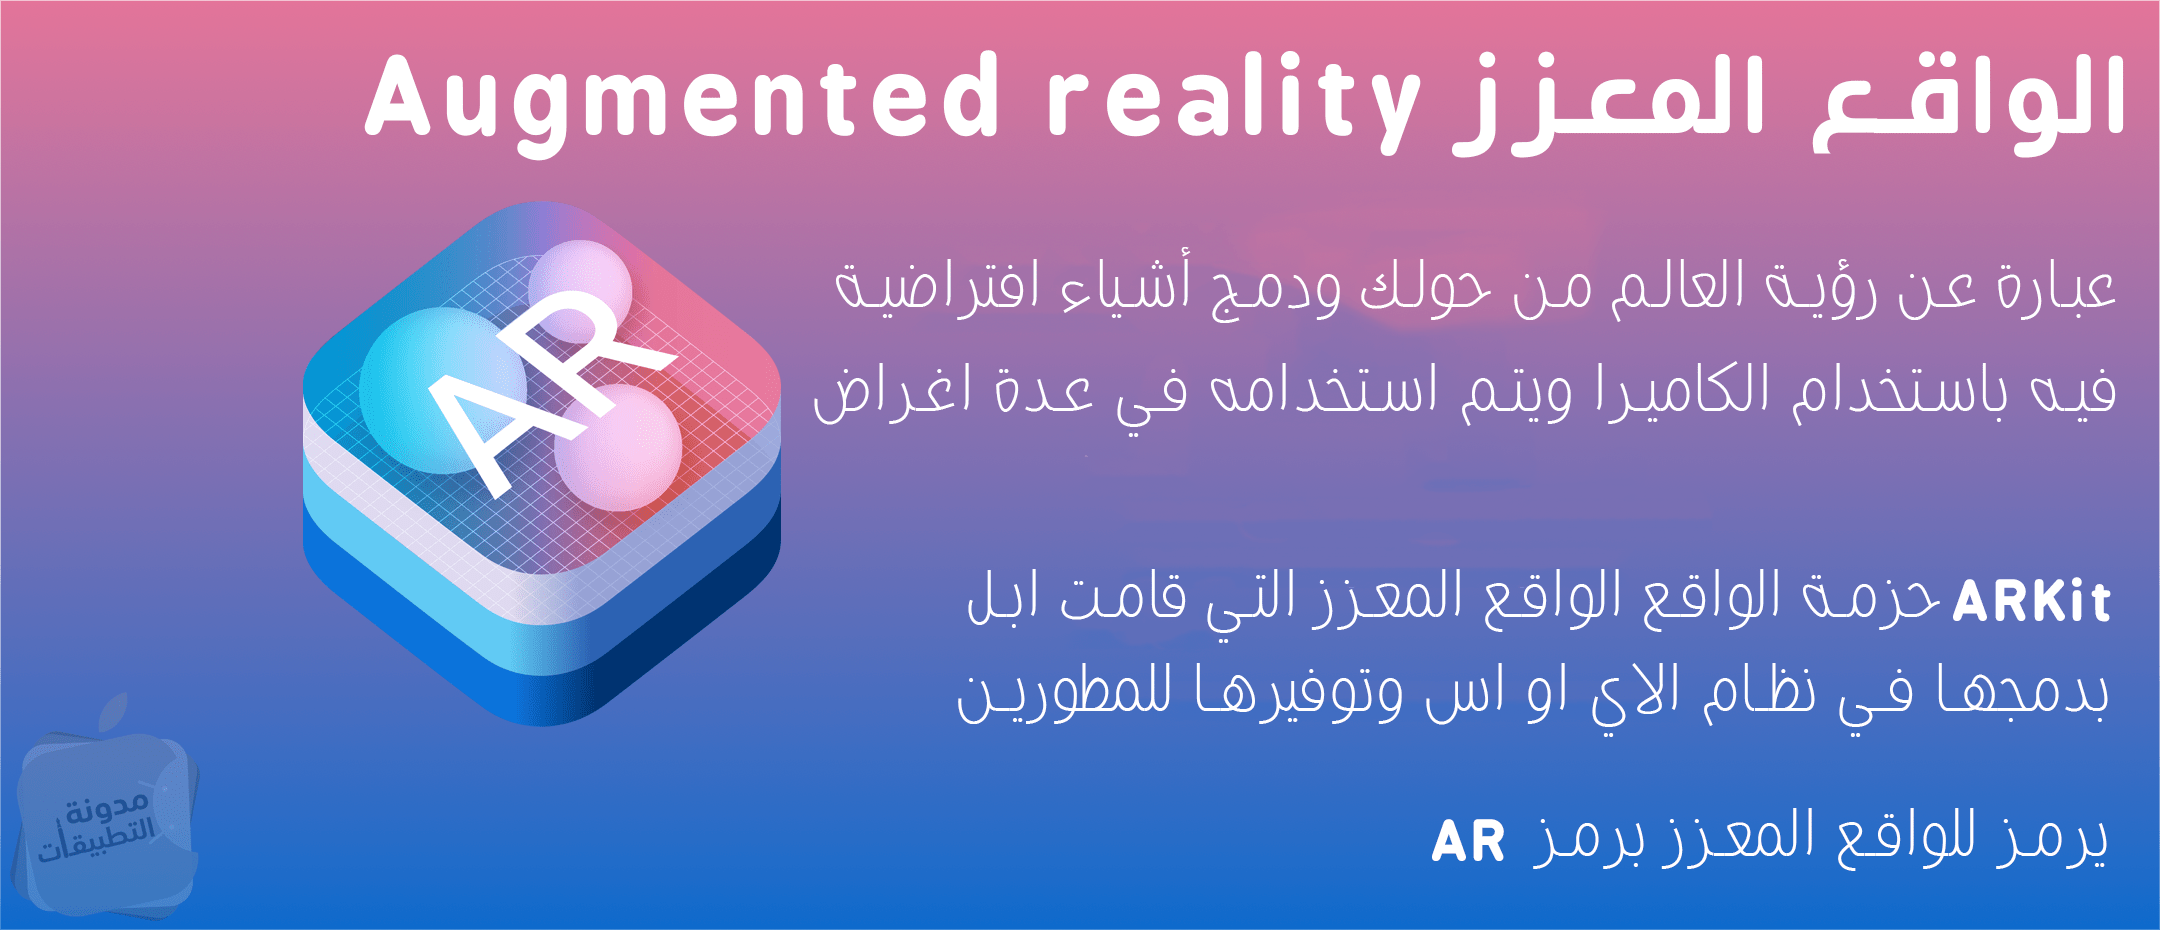 الواقع المعزز Augmented reality